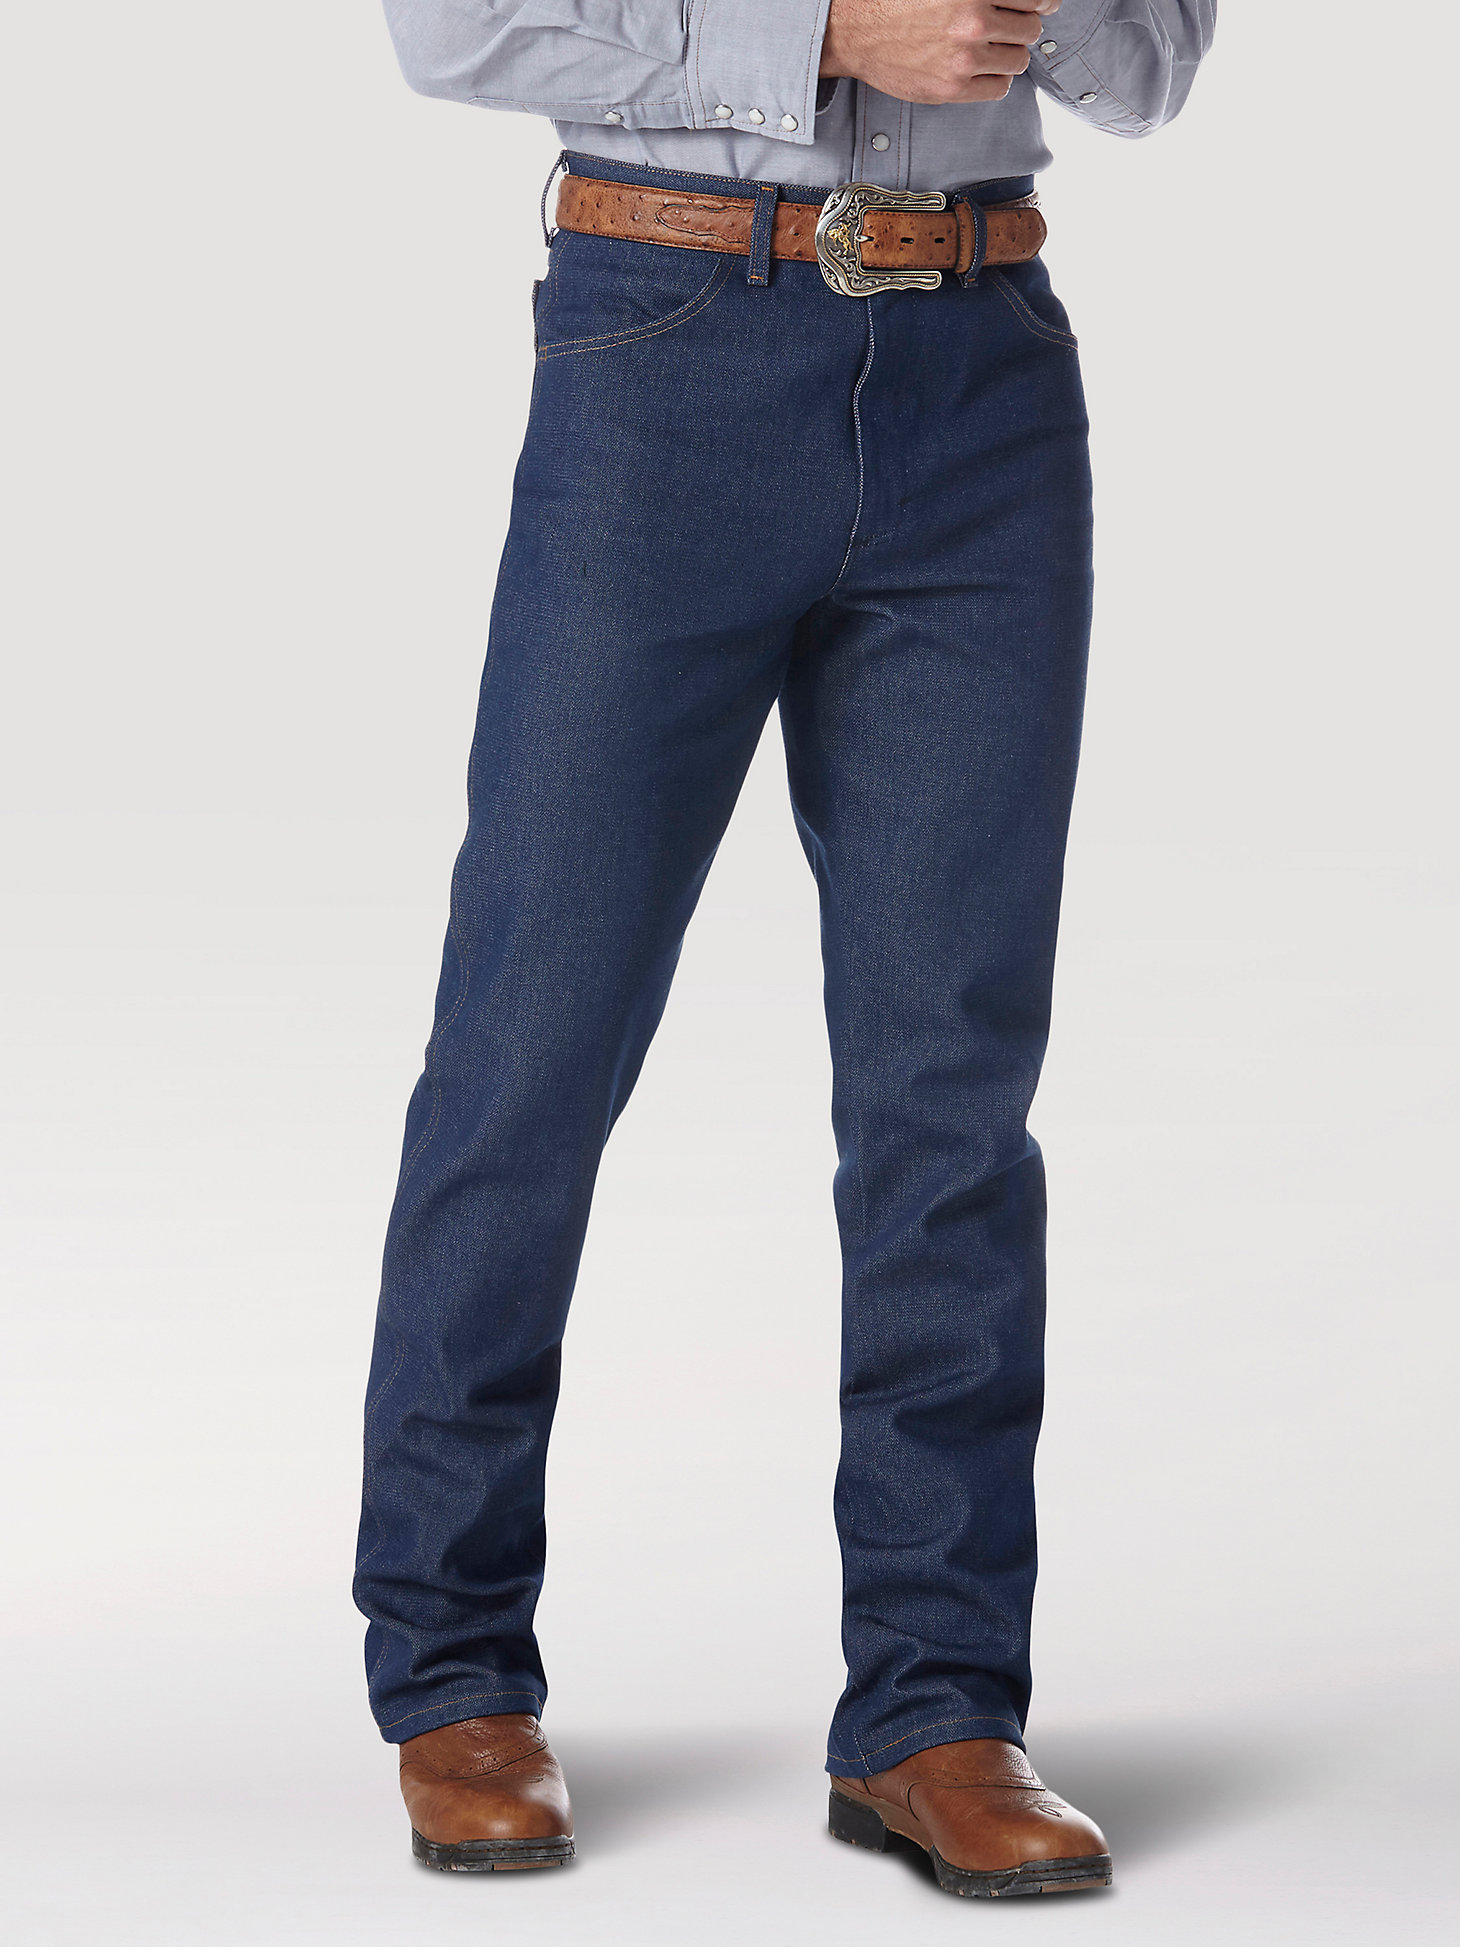 Actualizar 41+ imagen best wrangler jeans for boots